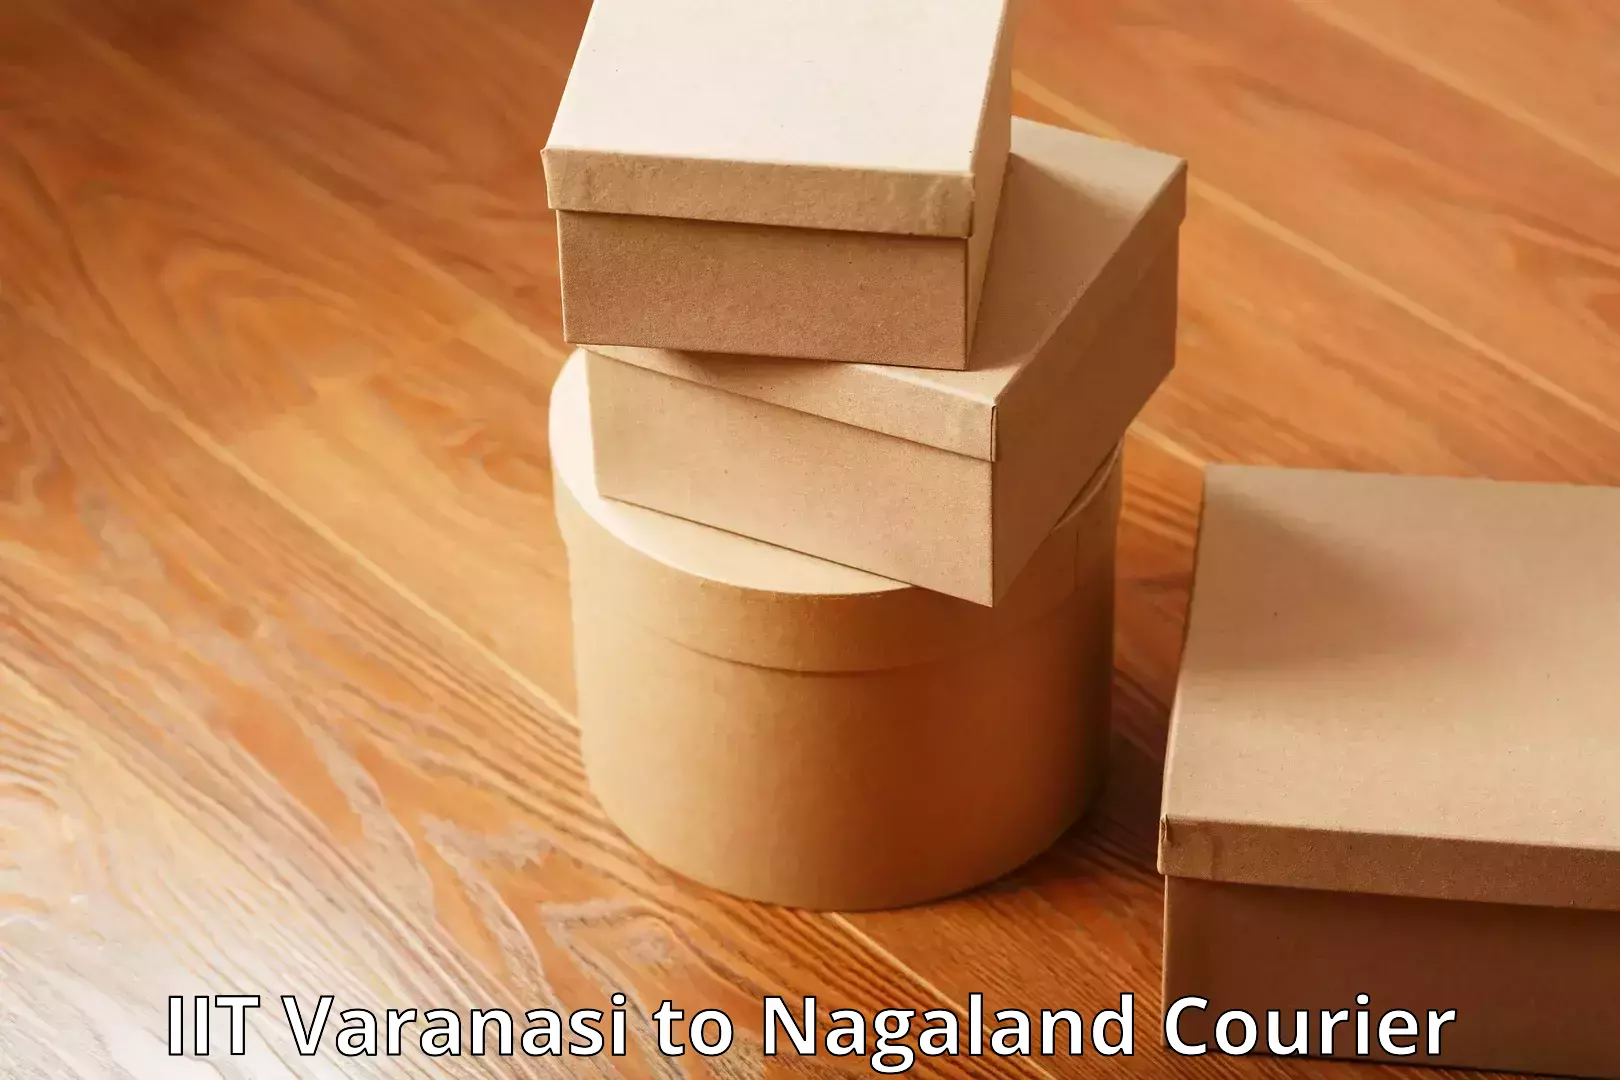 Luggage shipping service IIT Varanasi to Nagaland